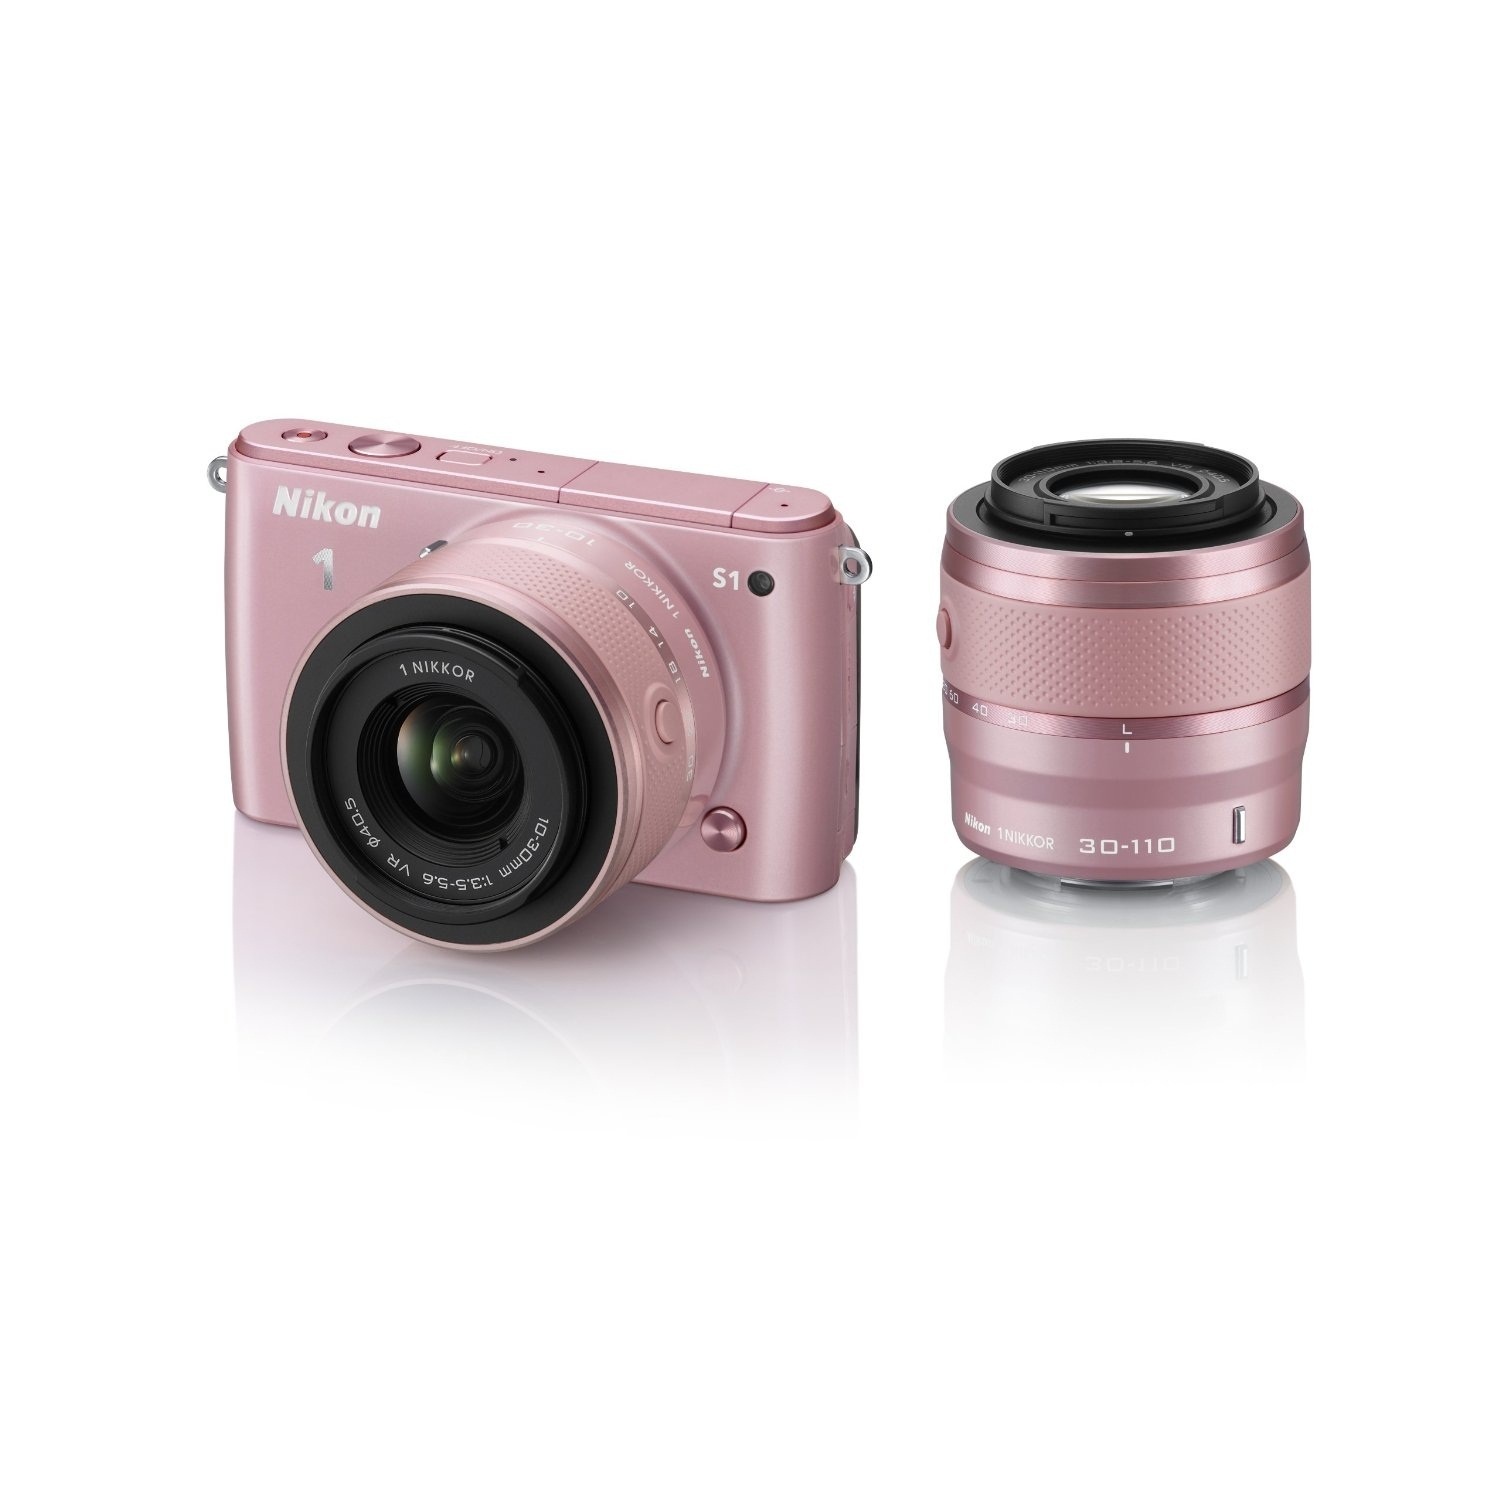 【クリックで詳細表示】[NIKON]新品ニコンNikon 1 S1 ダブルズームキット [ピンク]「Nikon 1 S1」「1 NIKKOR VR 10-30mm f/3.5-5.6」「1 NIKKOR VR 30-110mm f/3.8-5.6」のセット